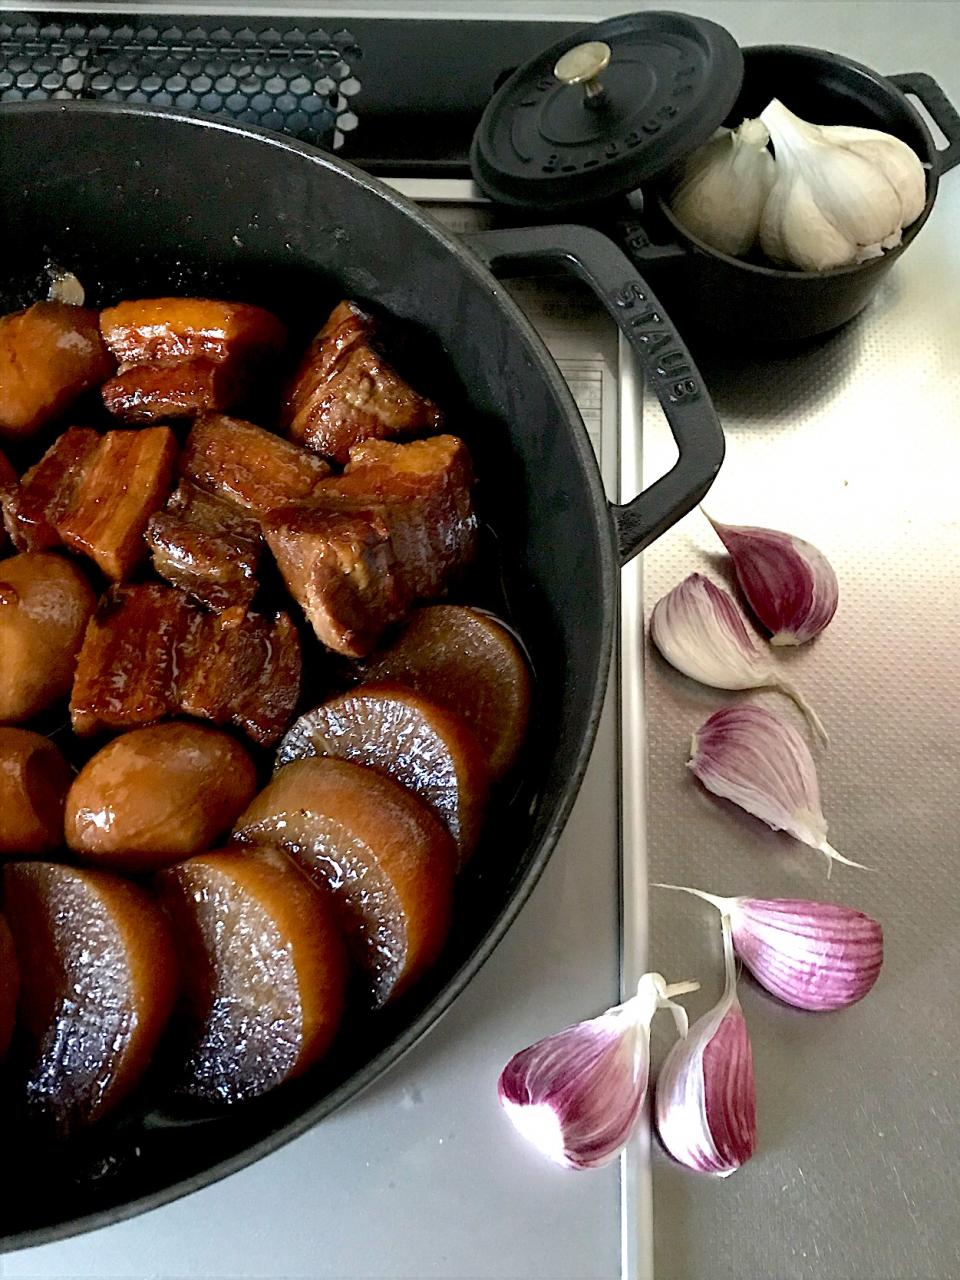 スタミナ煮豚💨

焼肉のたれで簡単に〜